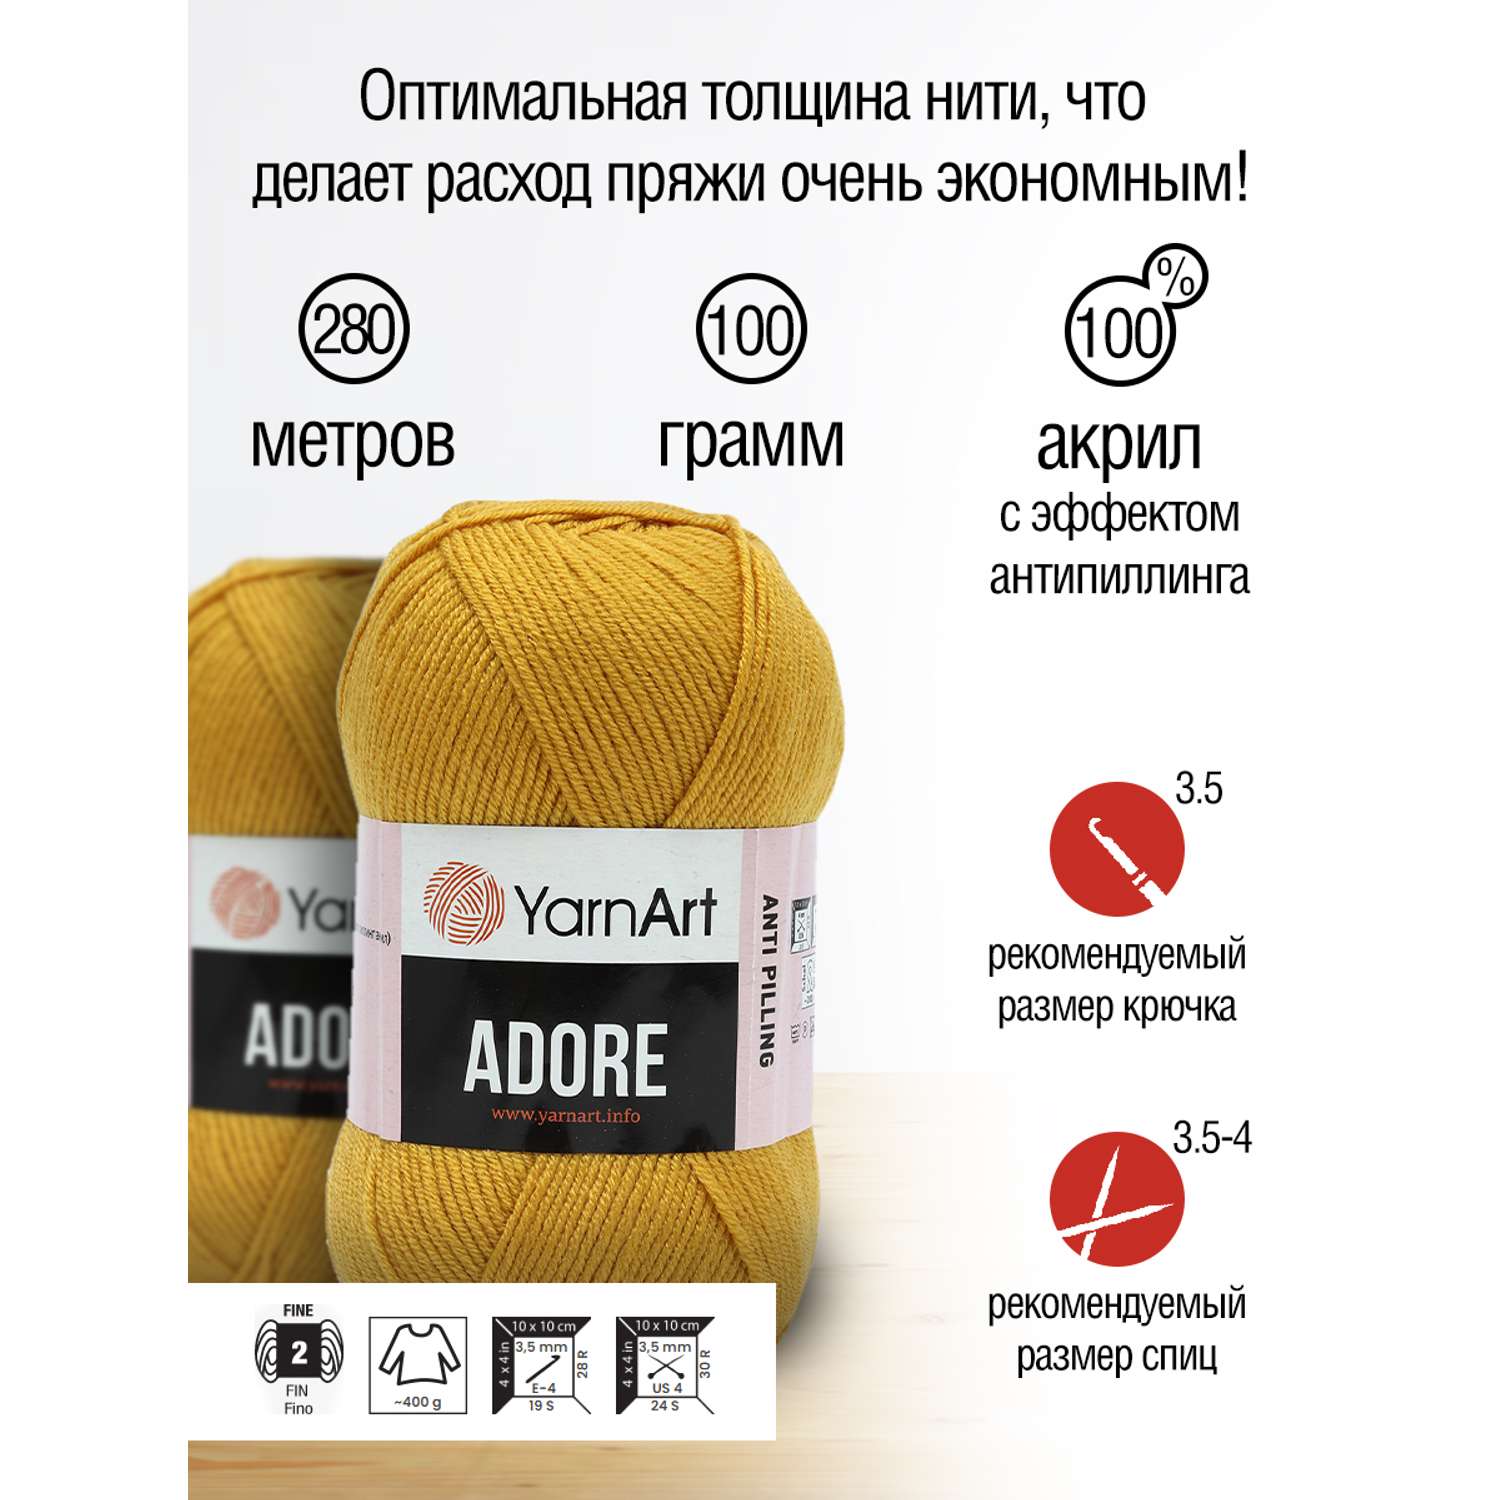 Пряжа для вязания YarnArt Adore 100 гр 280 м акрил с эффектом анти-пиллинга 5 мотков 334 горчичный - фото 2